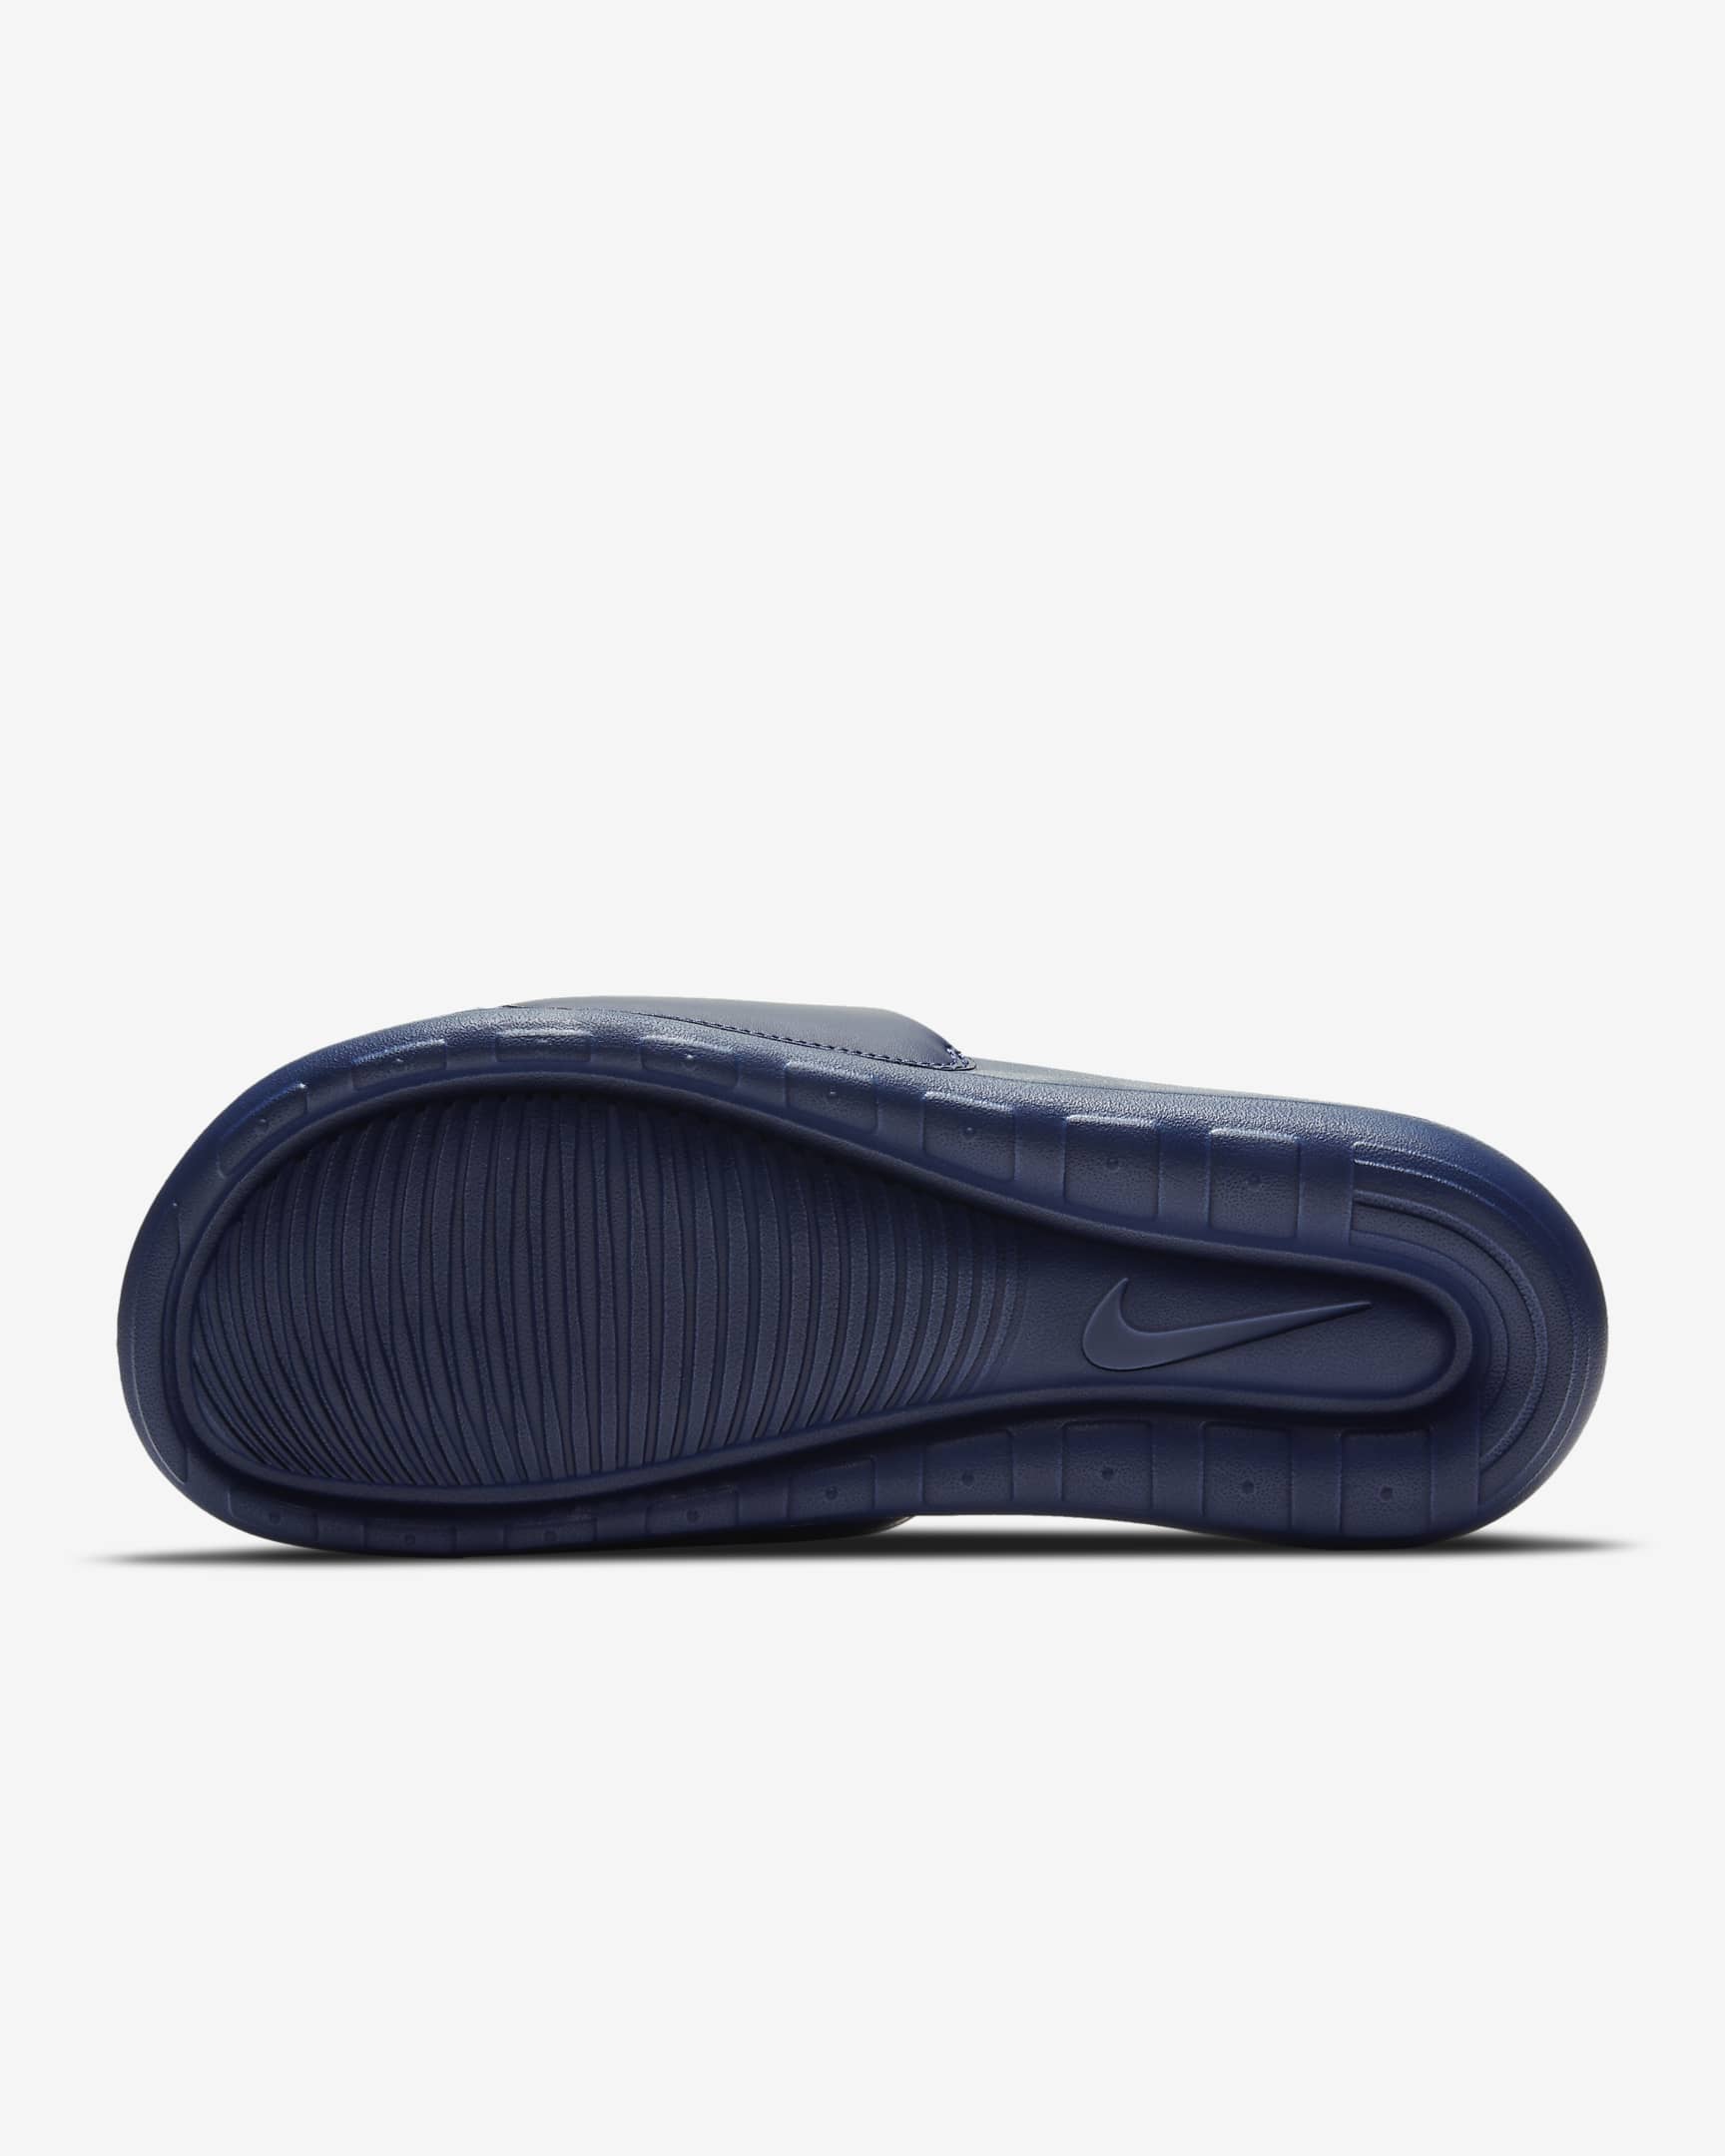 Nike Victori One Men's Slides - Midnight Navy/Midnight Navy/White